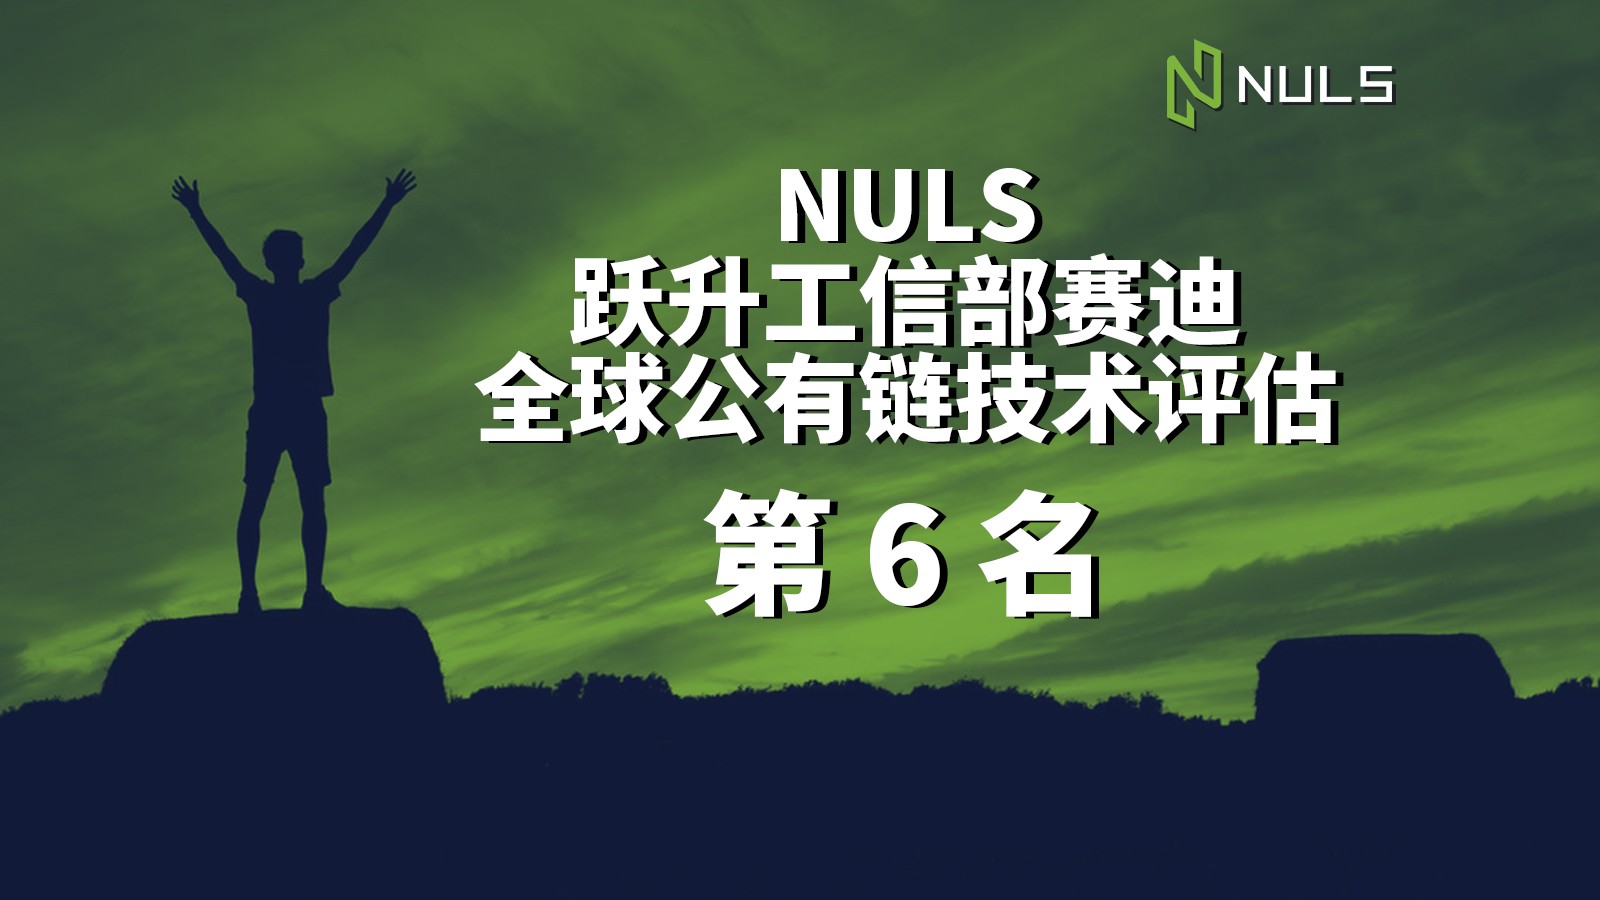 「星空财经」NULS跃升赛迪全球公有链技术评估第六名